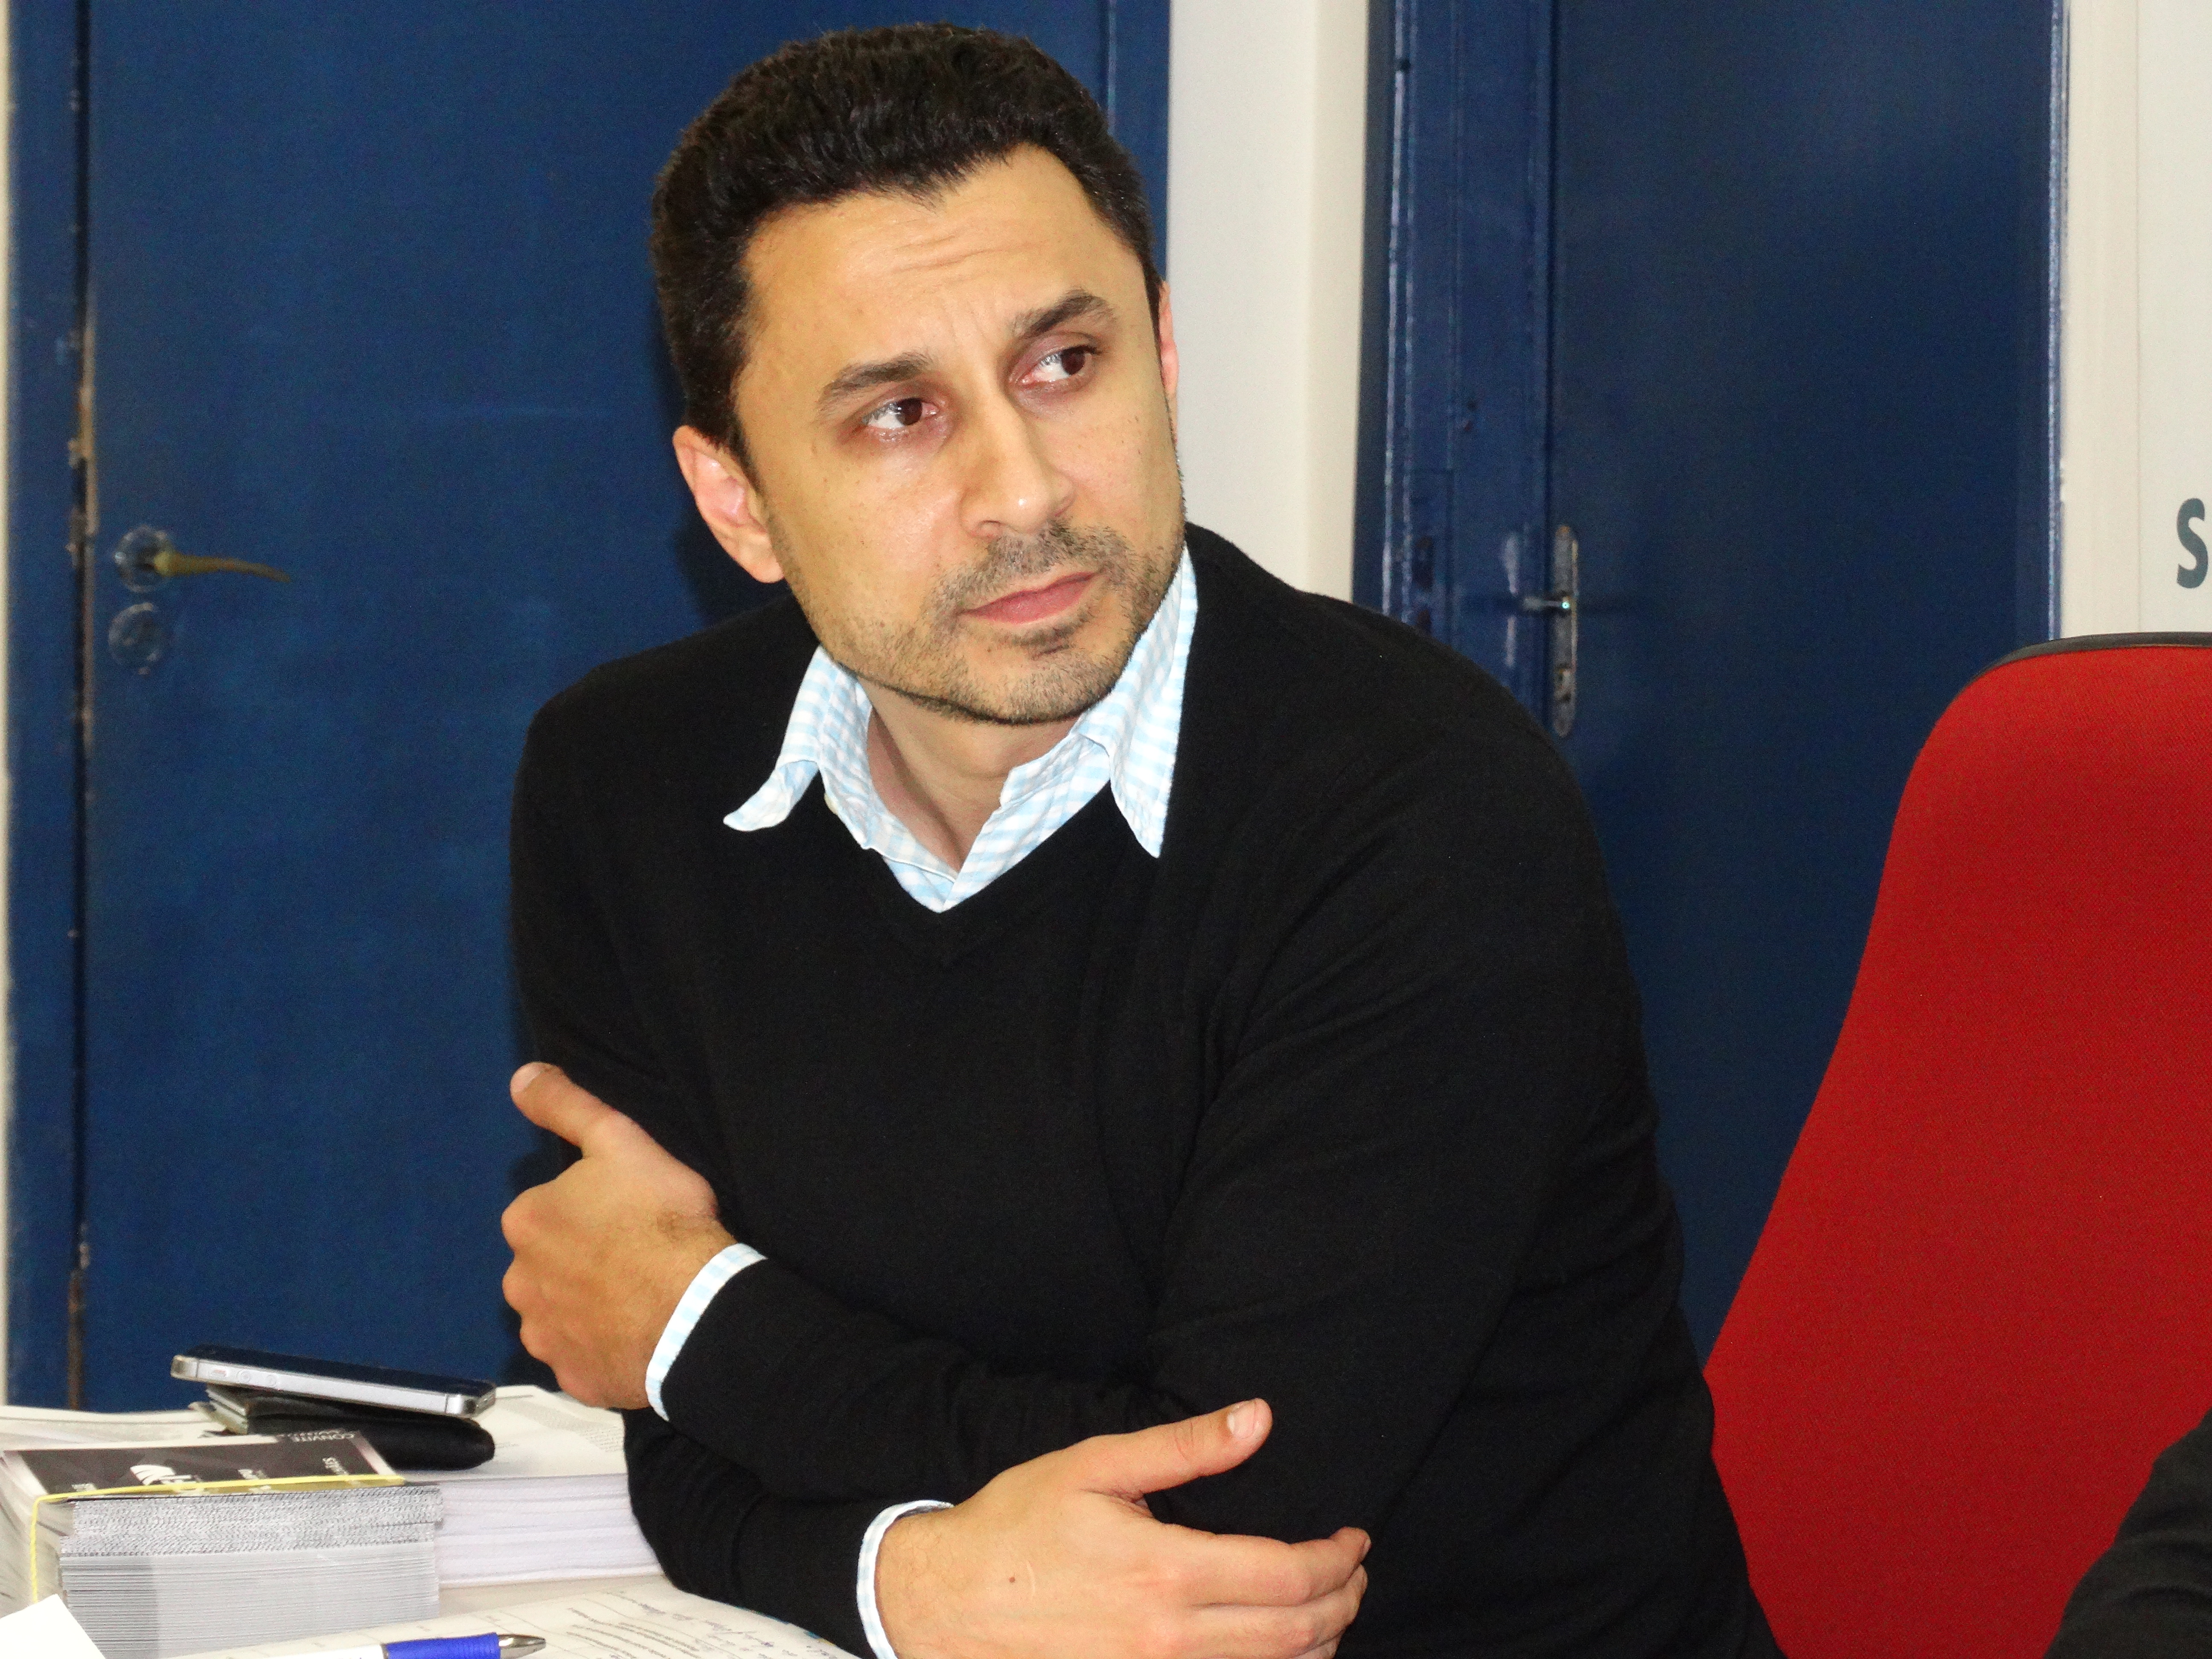 Diretoria da ACIFI discute parcerias e eleições